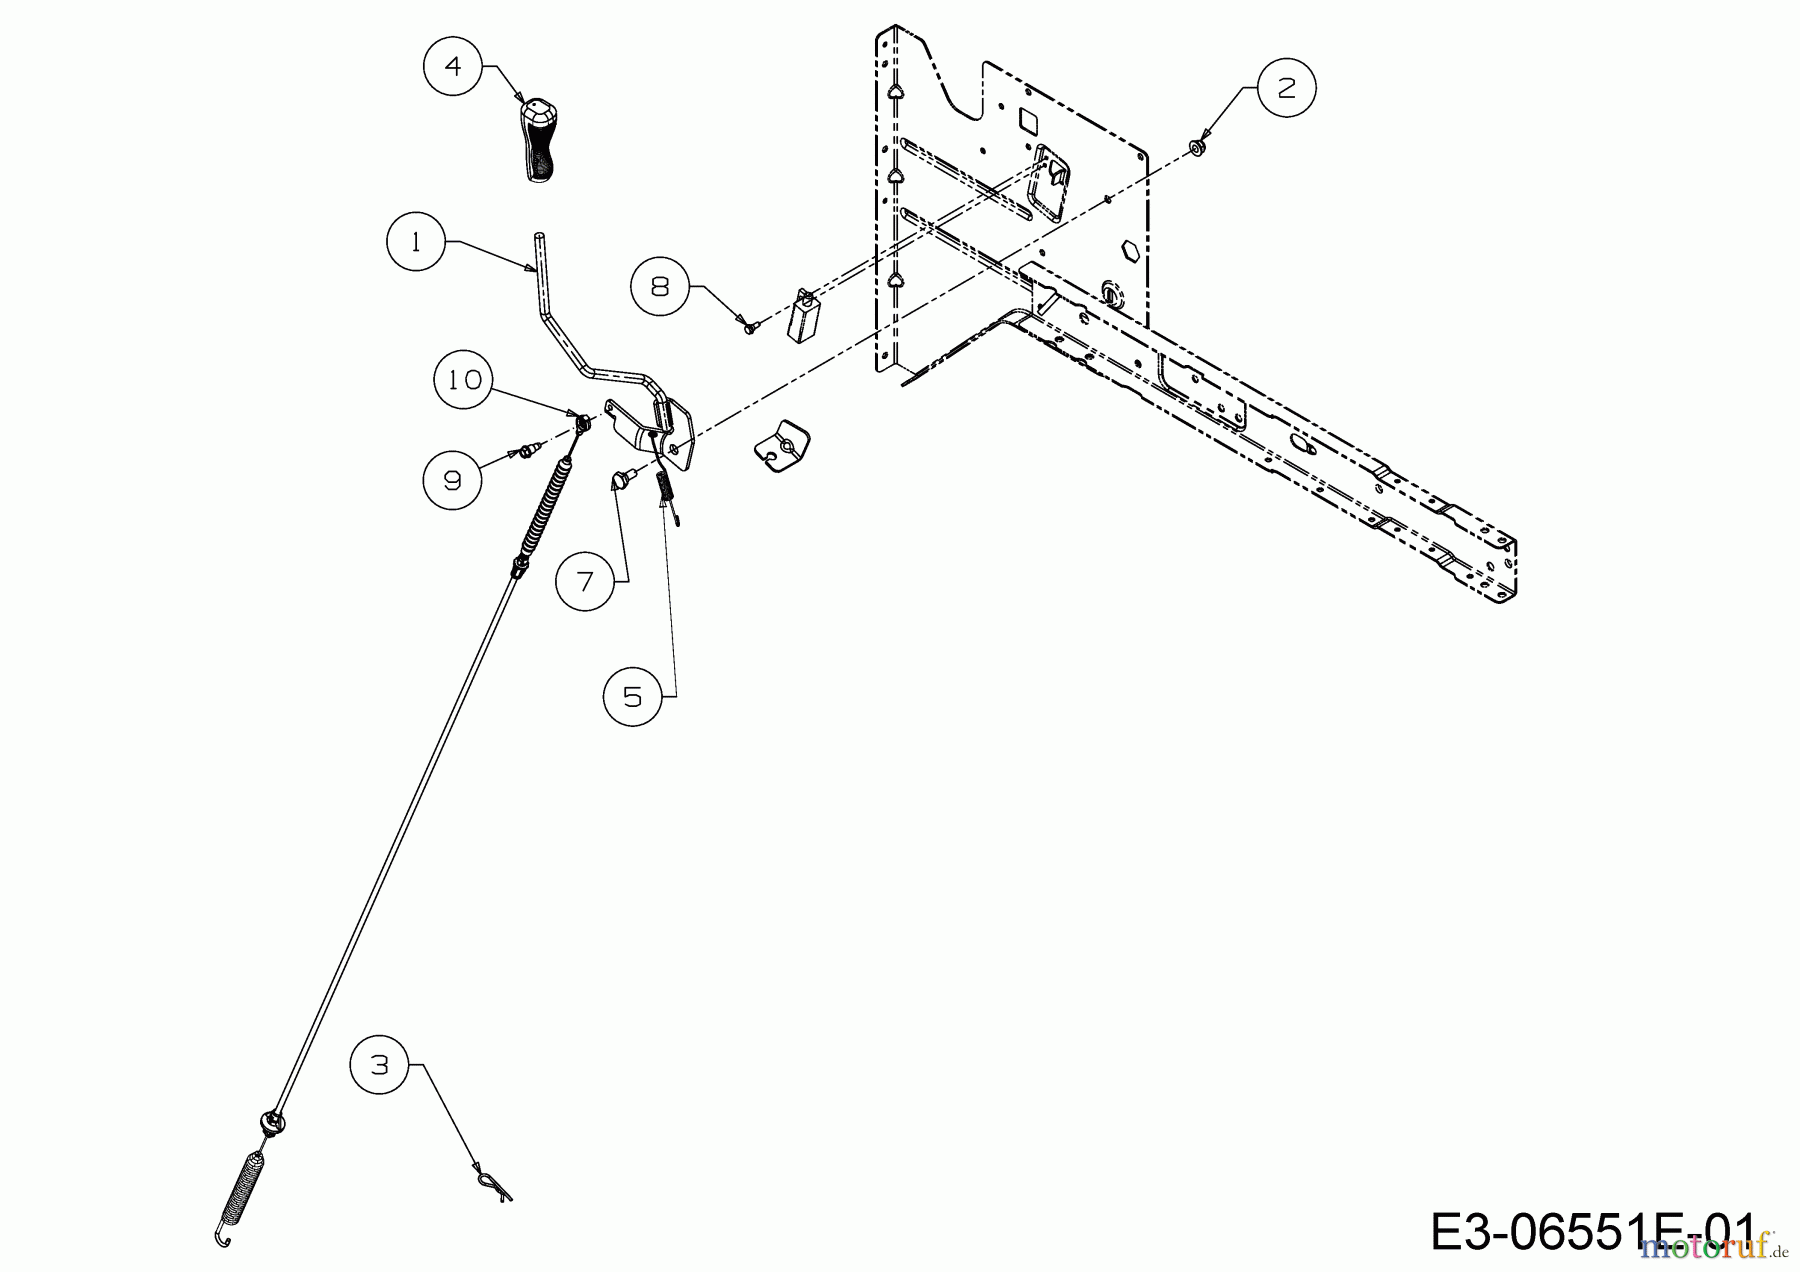  Dormak Rasentraktoren TX 36 T 13HH76SE699  (2017) Mähwerkseinschaltung